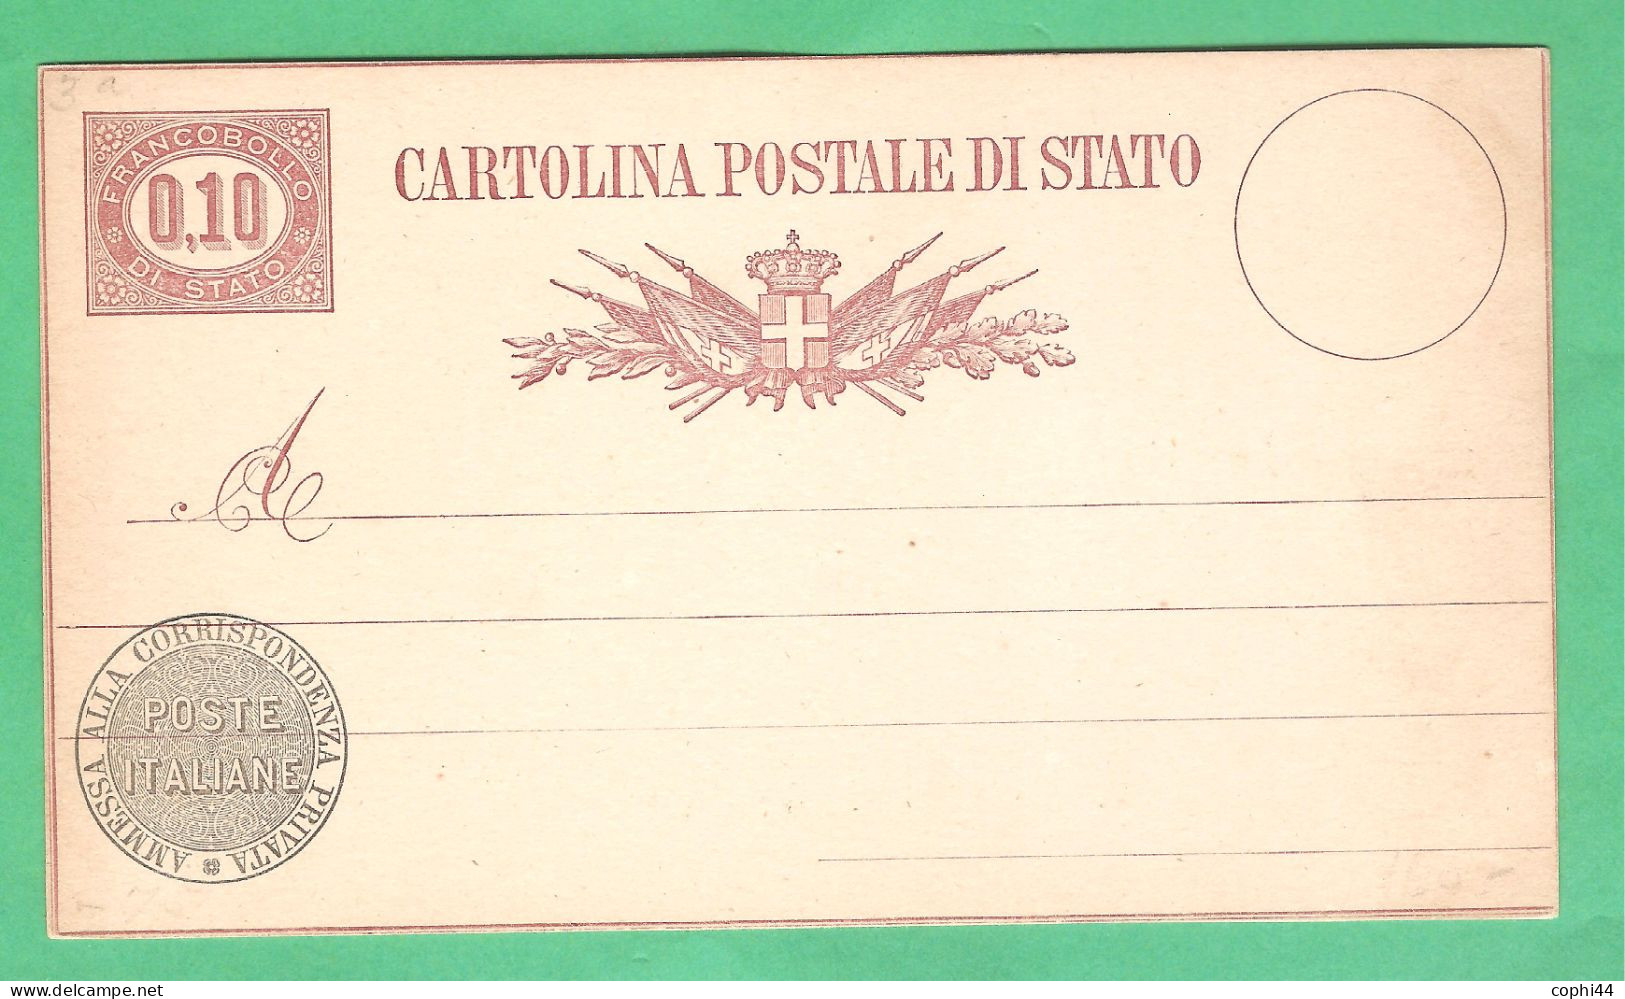 REGNO D'ITALIA 1877 VEII CARTOLINA POSTALE SERVIZIO DI STATO N. 3 Lire 0,10 NUOVA 2 FILETTI BUONE CONDIZIONI - Interi Postali